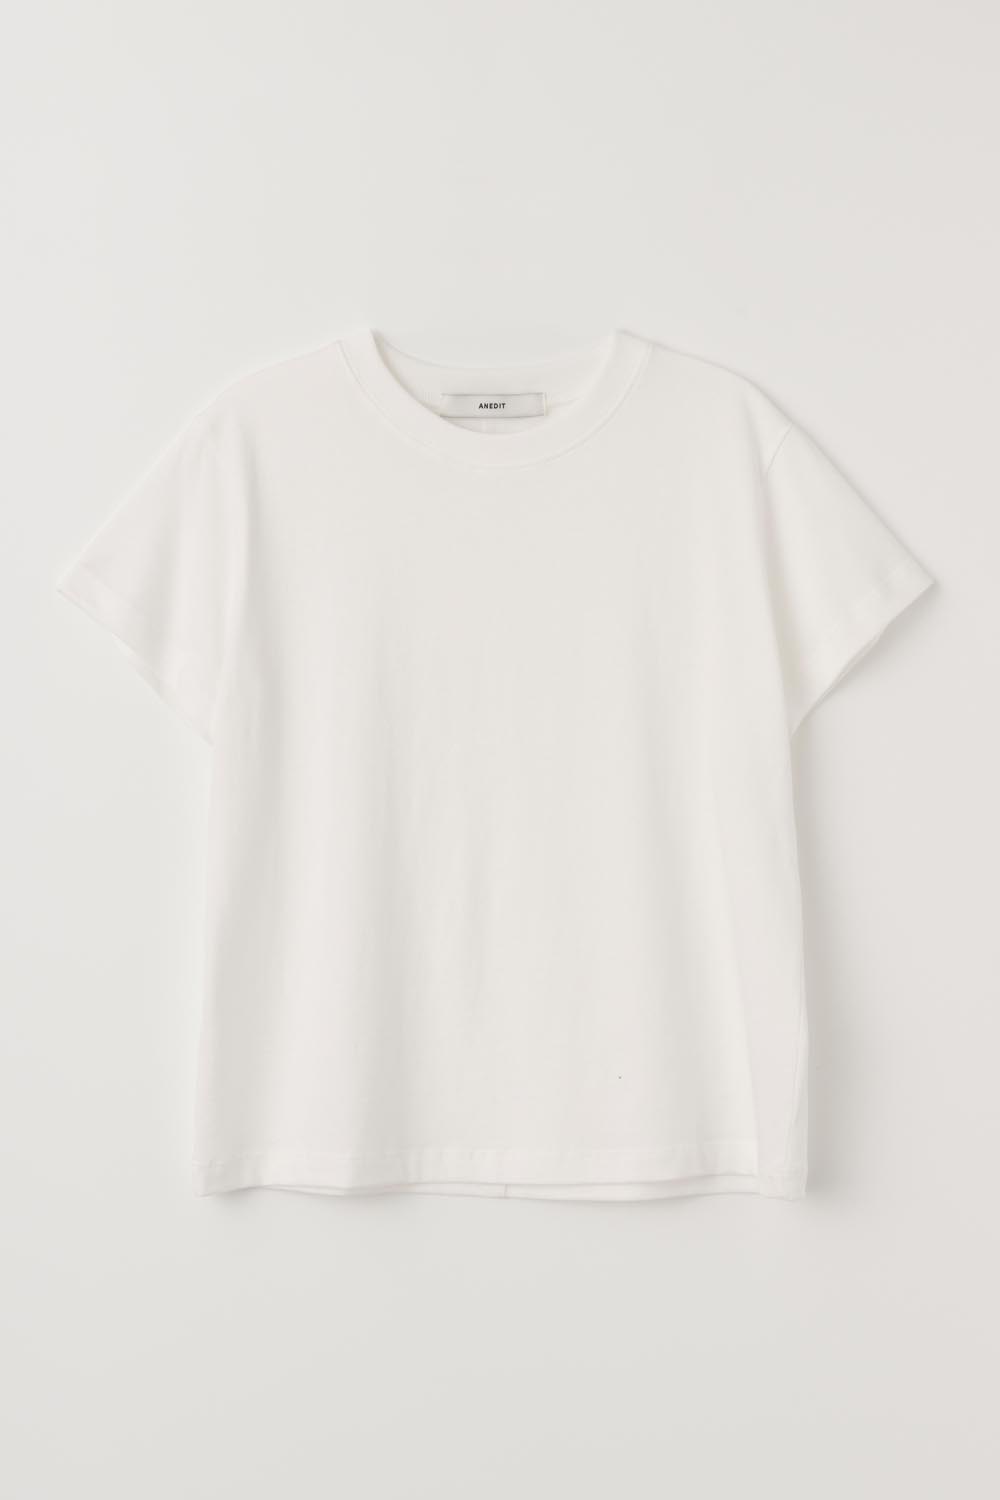 H Daily Basic Half Tshirt_White